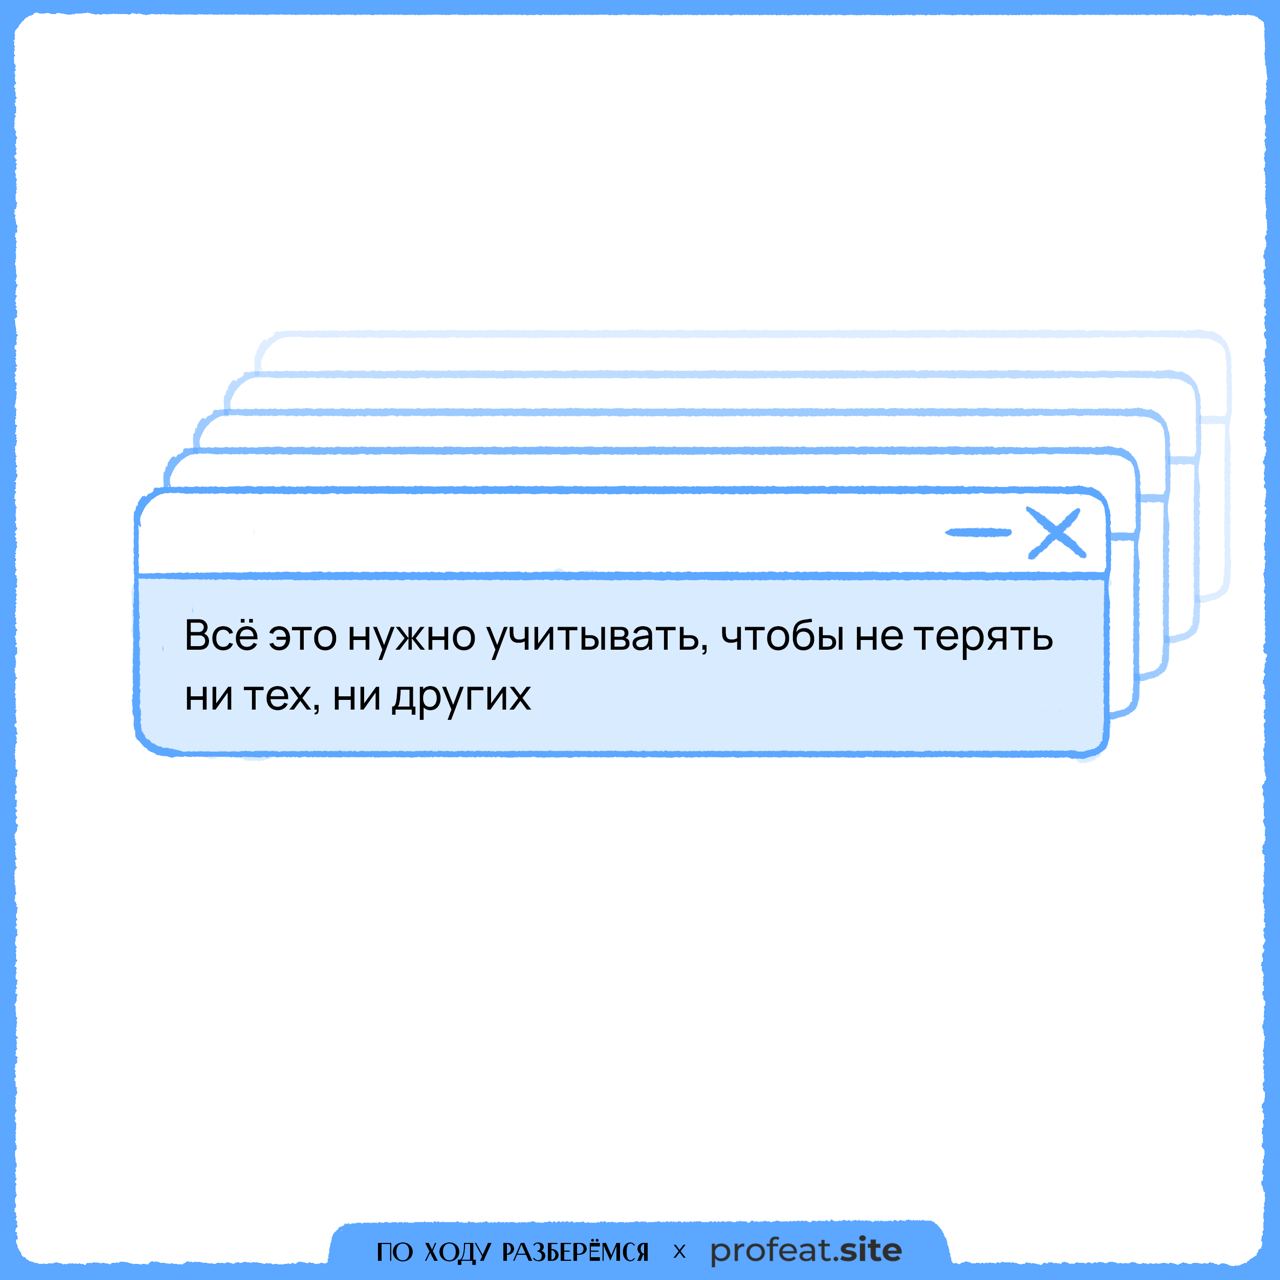 Телеграмм как пишется правильно на русском фото 112